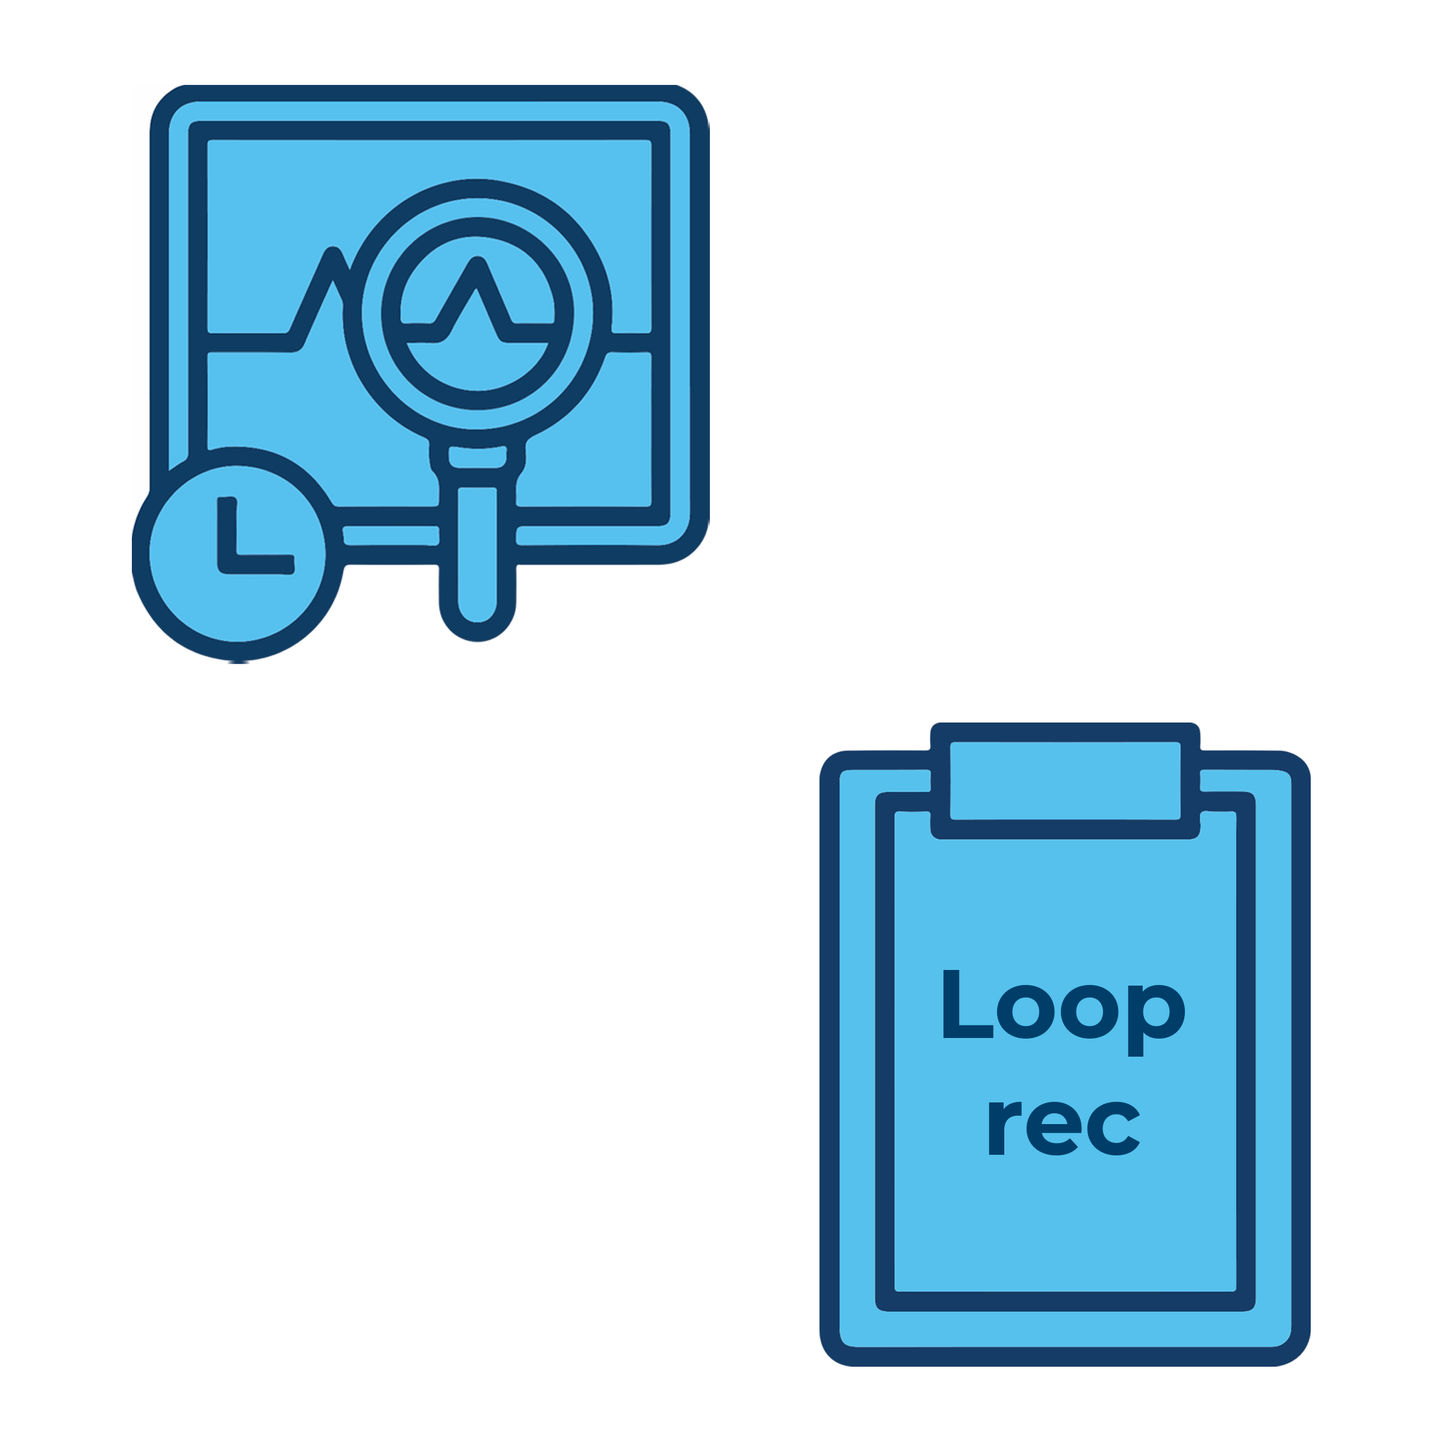 Referto Loop recorder